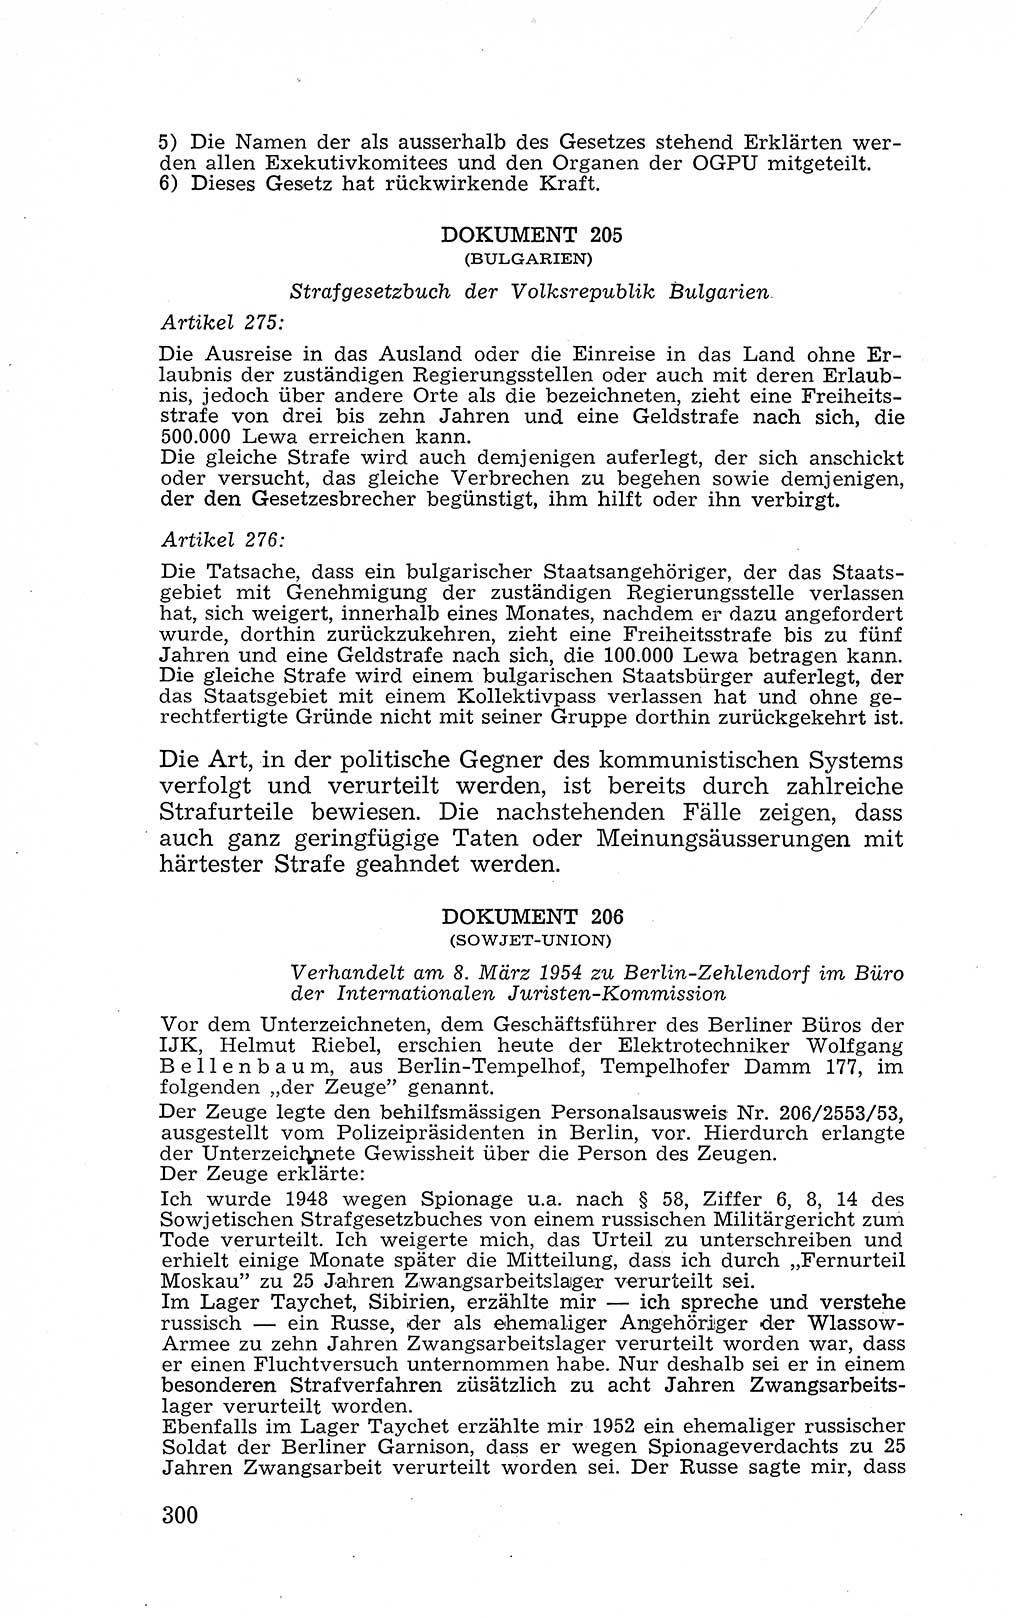 Recht in Fesseln, Dokumente, Internationale Juristen-Kommission [Bundesrepublik Deutschland (BRD)] 1955, Seite 300 (R. Dok. IJK BRD 1955, S. 300)